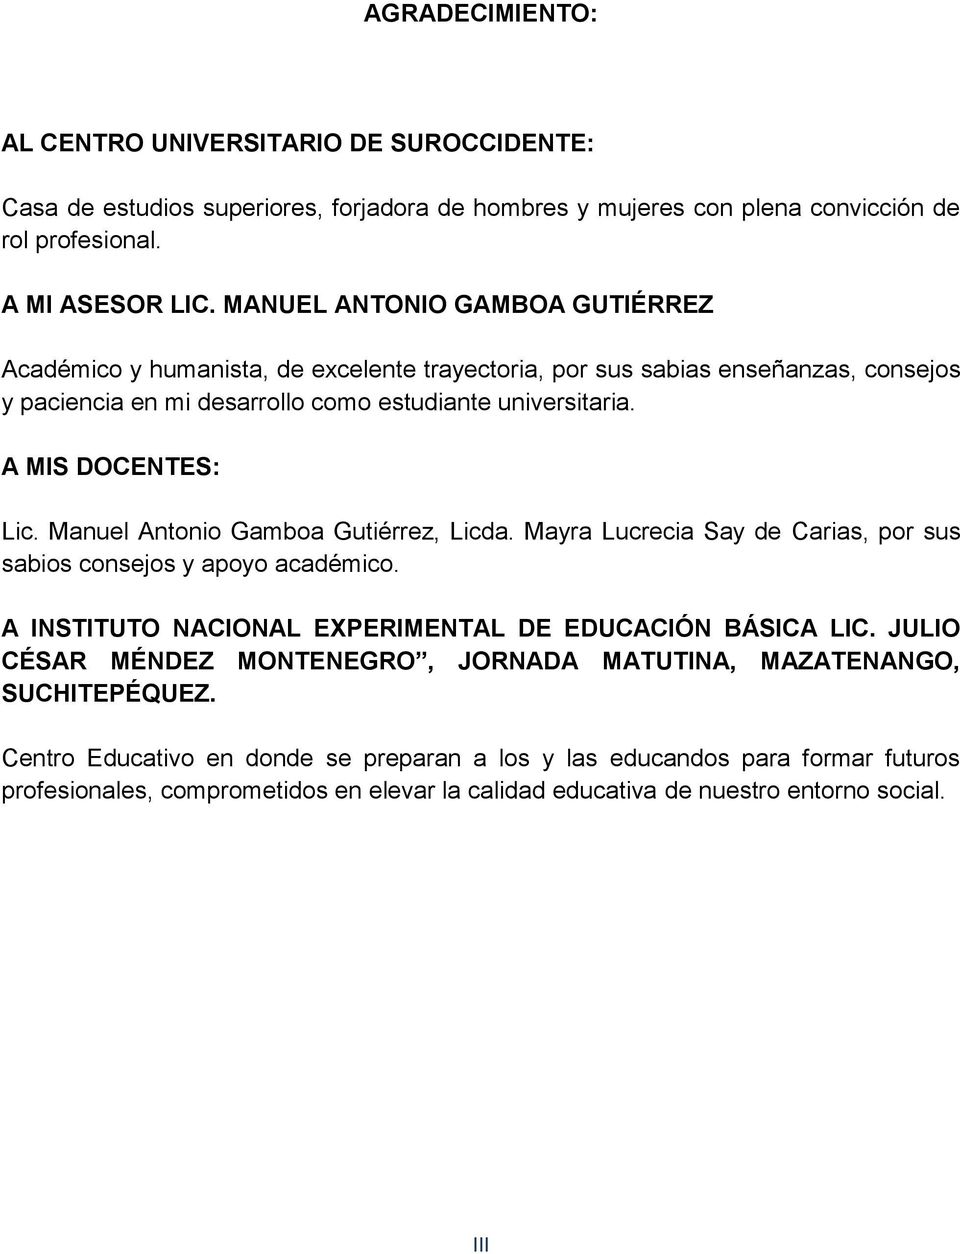 Manuel Antonio Gamboa Gutiérrez, Licda. Mayra Lucrecia Say de Carias, por sus sabios consejos y apoyo académico. A INSTITUTO NACIONAL EXPERIMENTAL DE EDUCACIÓN BÁSICA LIC.